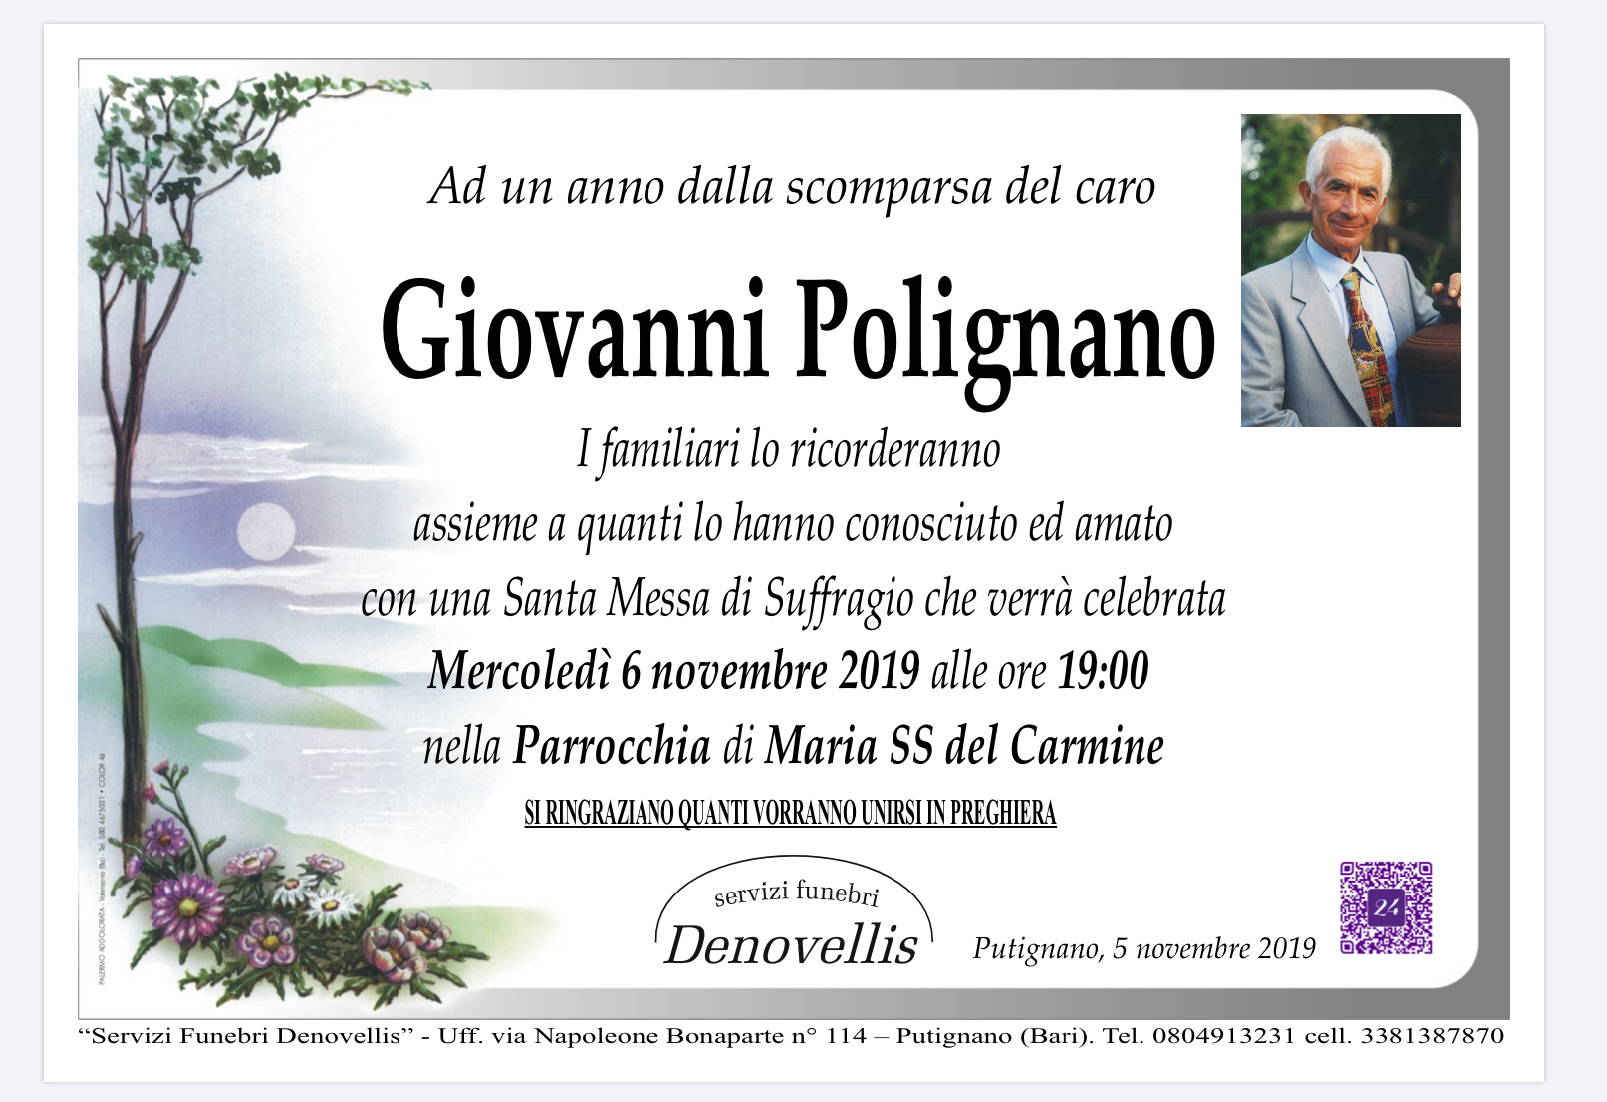 Giovanni Polignano